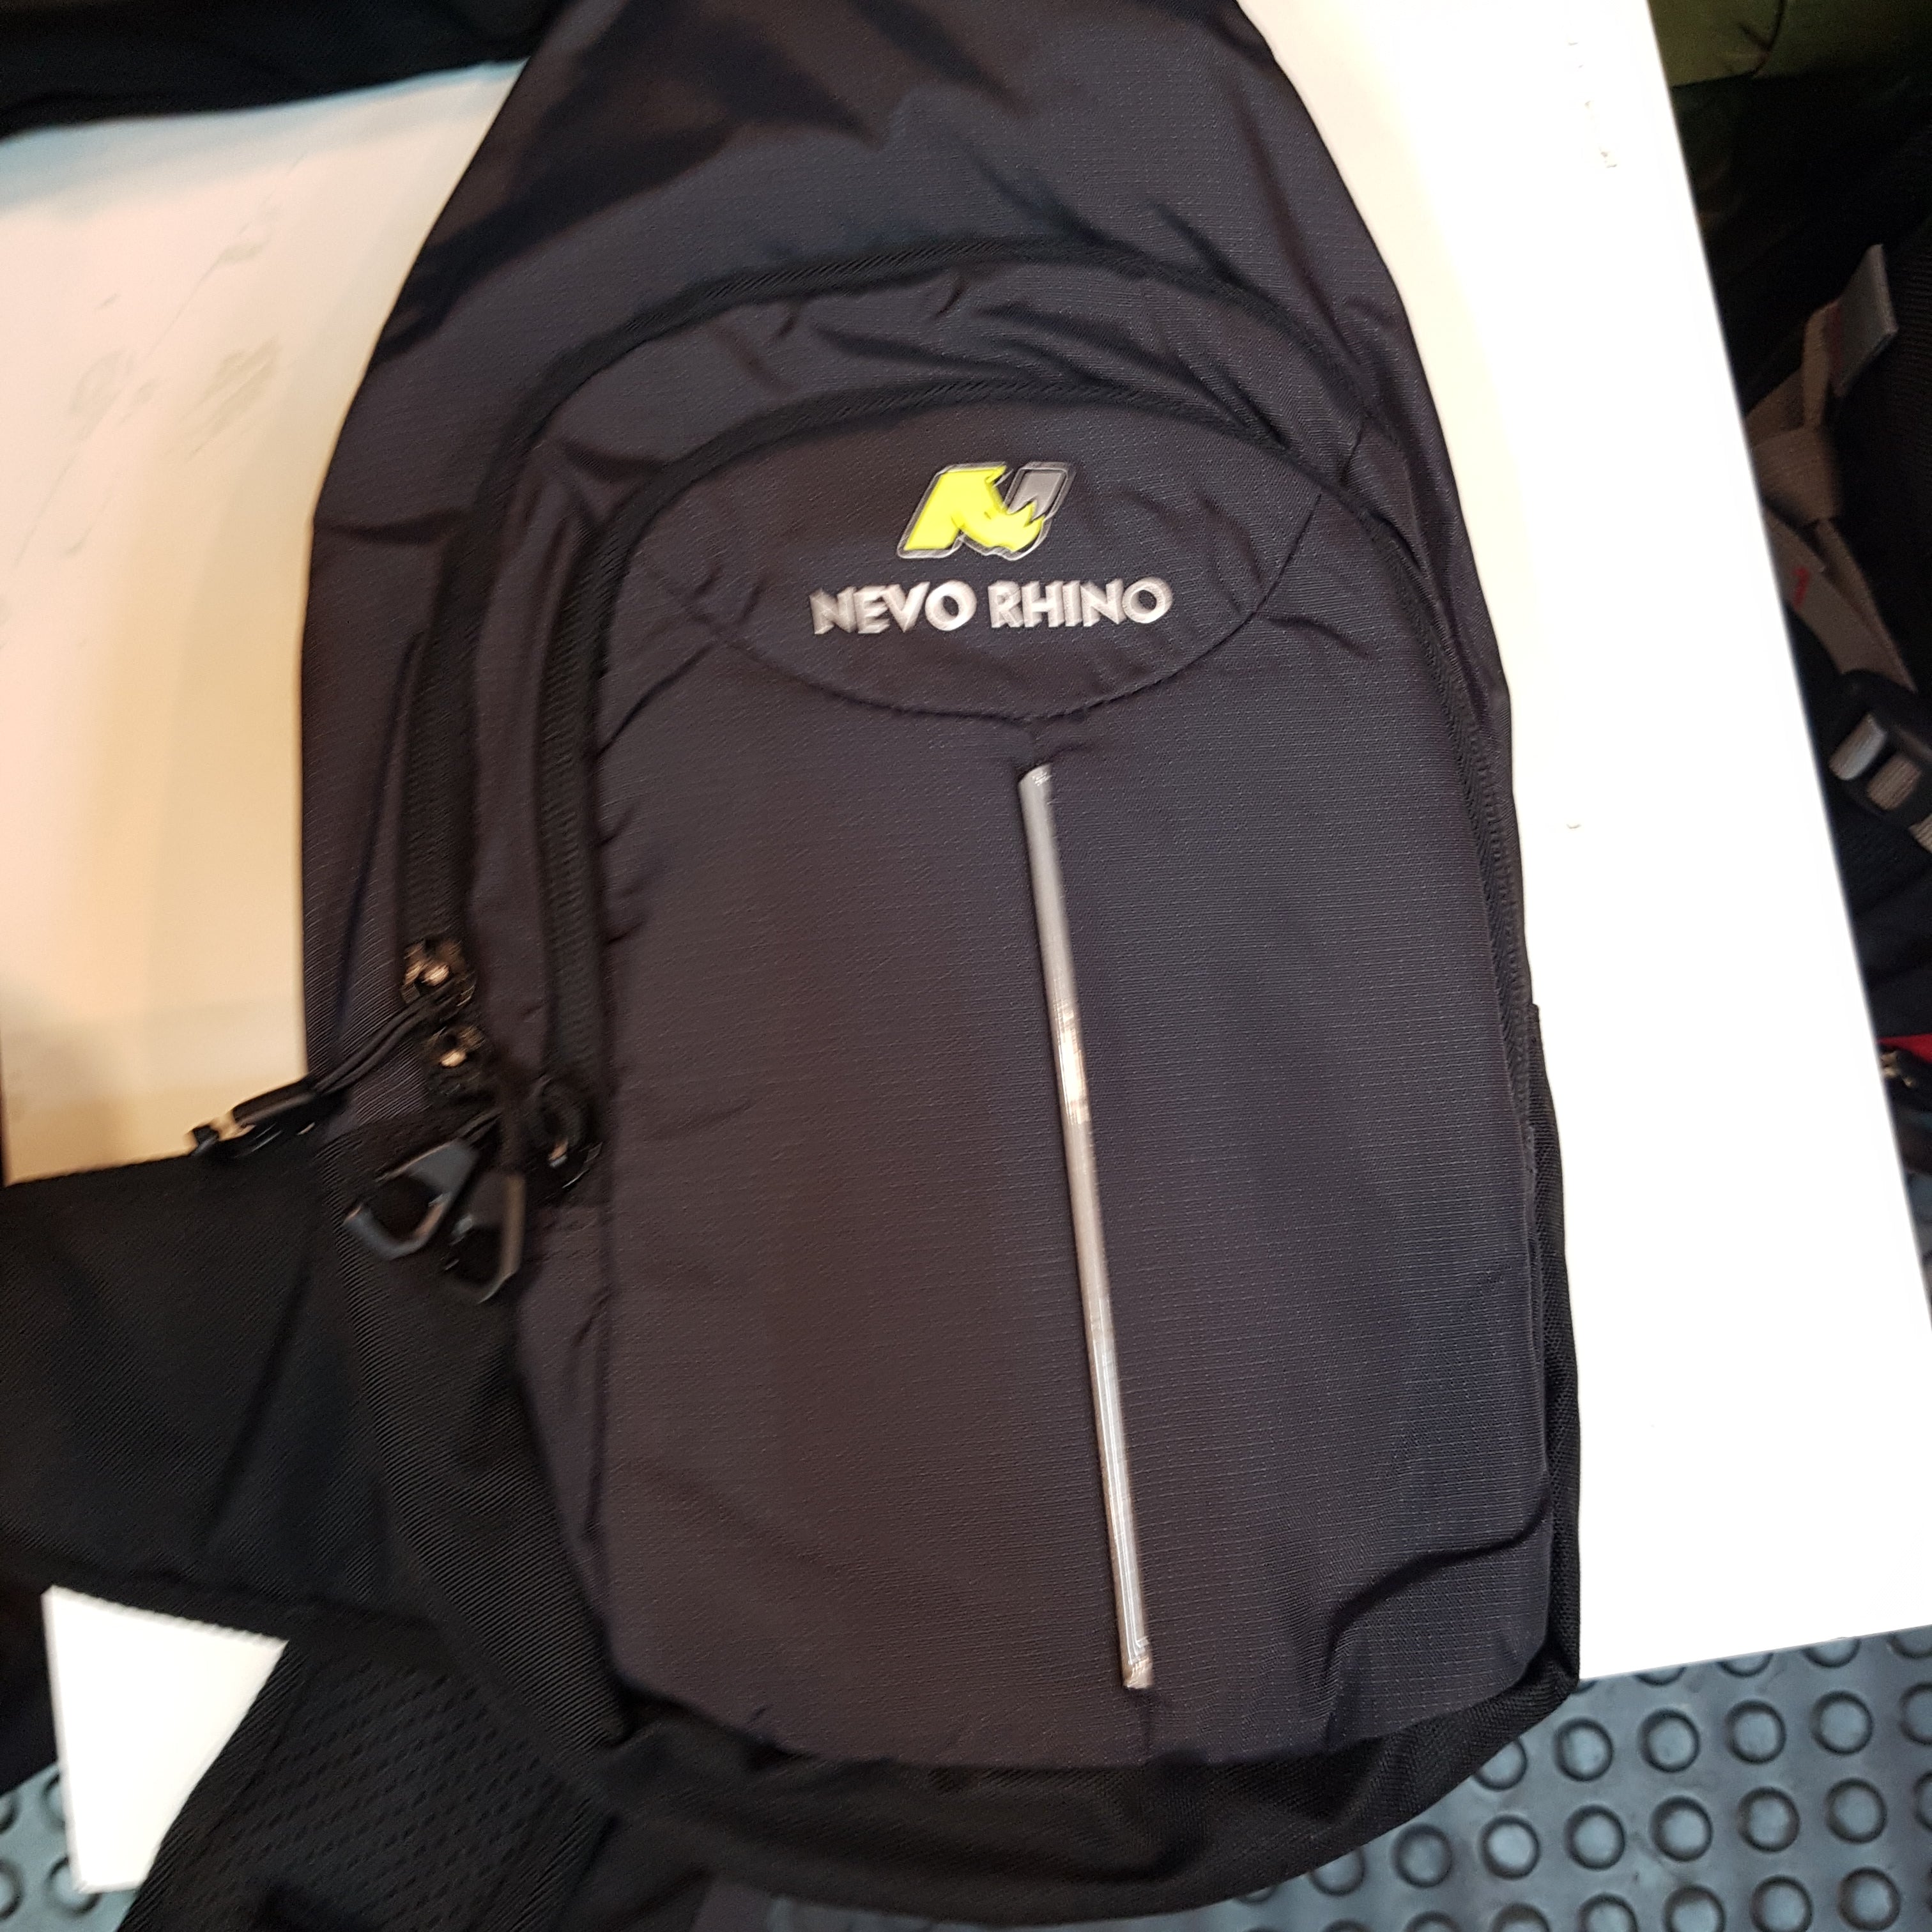 SG- Novo Crossbody bag